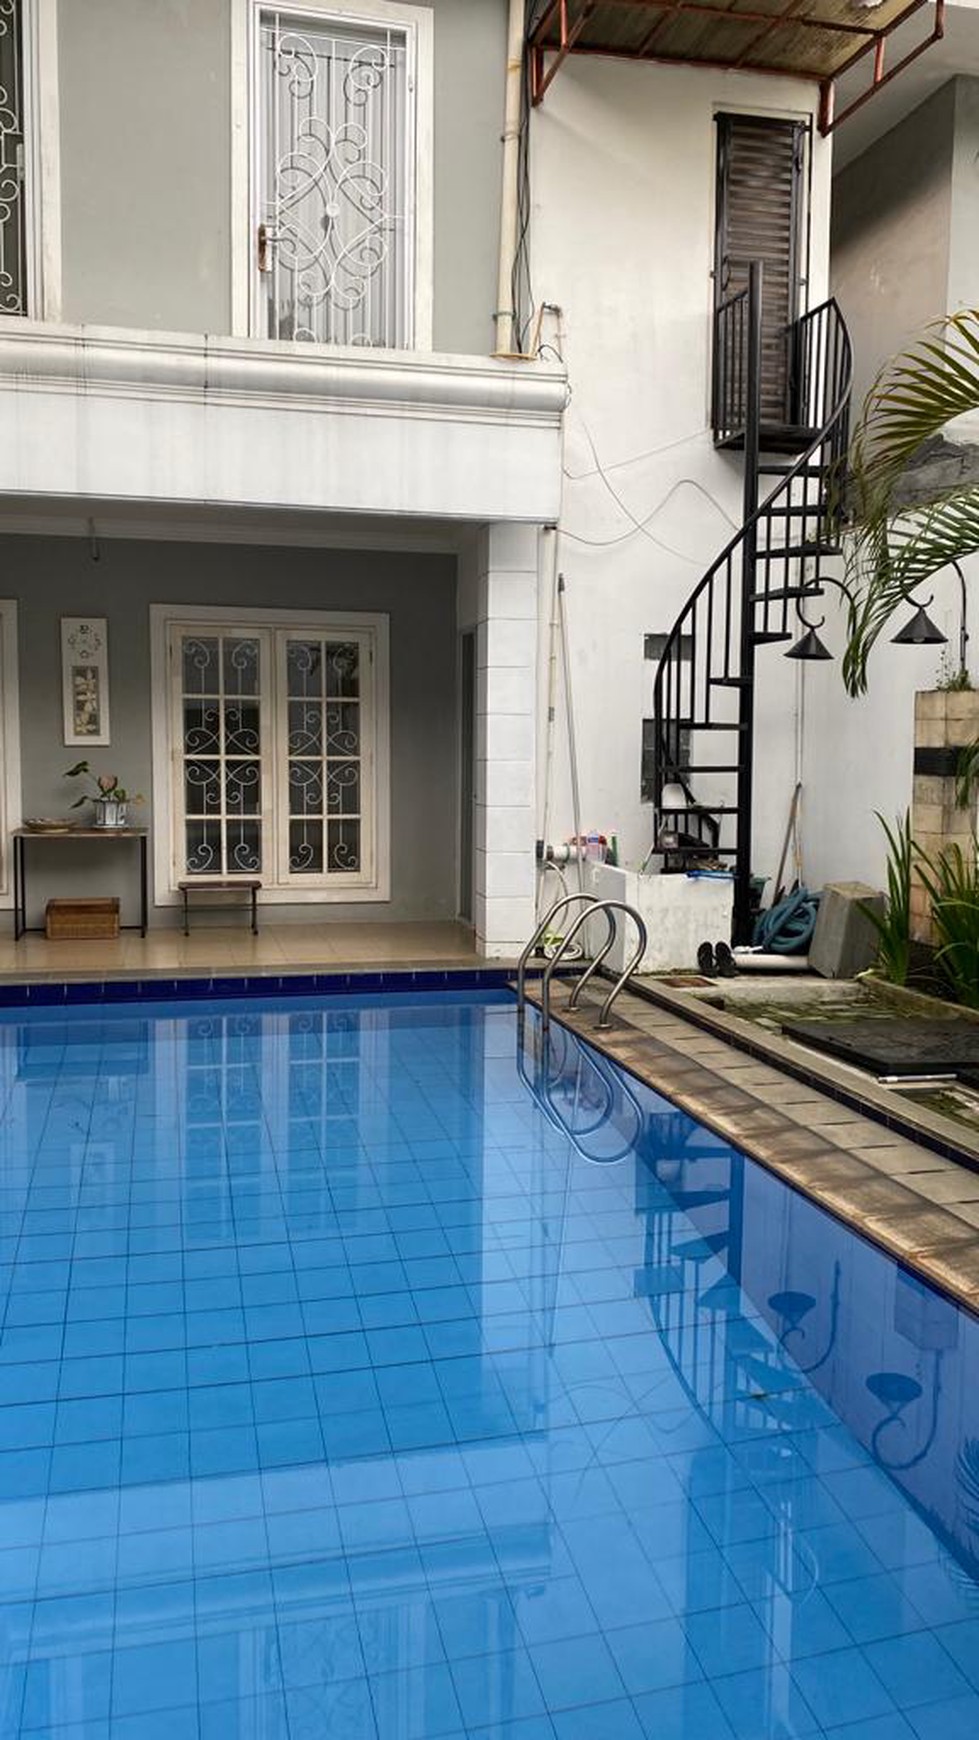 Rumah  2 lantai Siap Huni di Kota Wisata Cibubur ada kolam renang